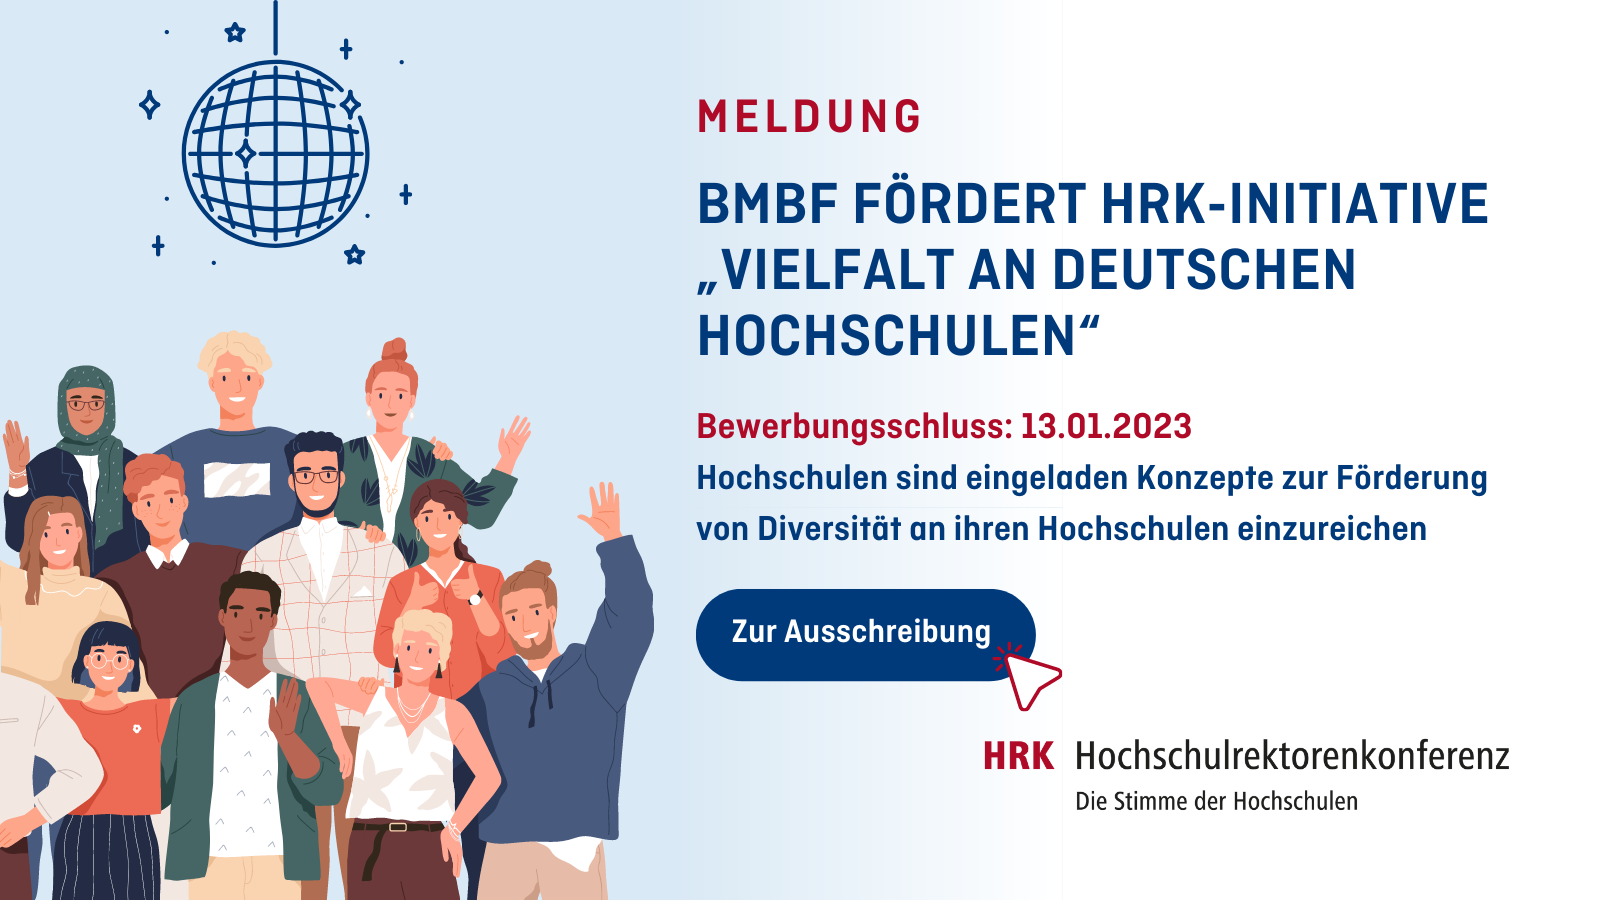 BMBF unterstützt HRK-Initiative "Vielfalt an deutschen Hochschulen". Bewerbungsschluss ist der 13.1.2023. Hochschulen sind eingeladen Konzepte zur Förderung von Diversität an ihren Hochschulen einzureichen. Links: Symbolbild mit Zeichnungen von verschiedenen Menschen, winkend, unter einer Diso-Kugel stehend. Logo: HRK - Hochschulrektorenkonferenz.